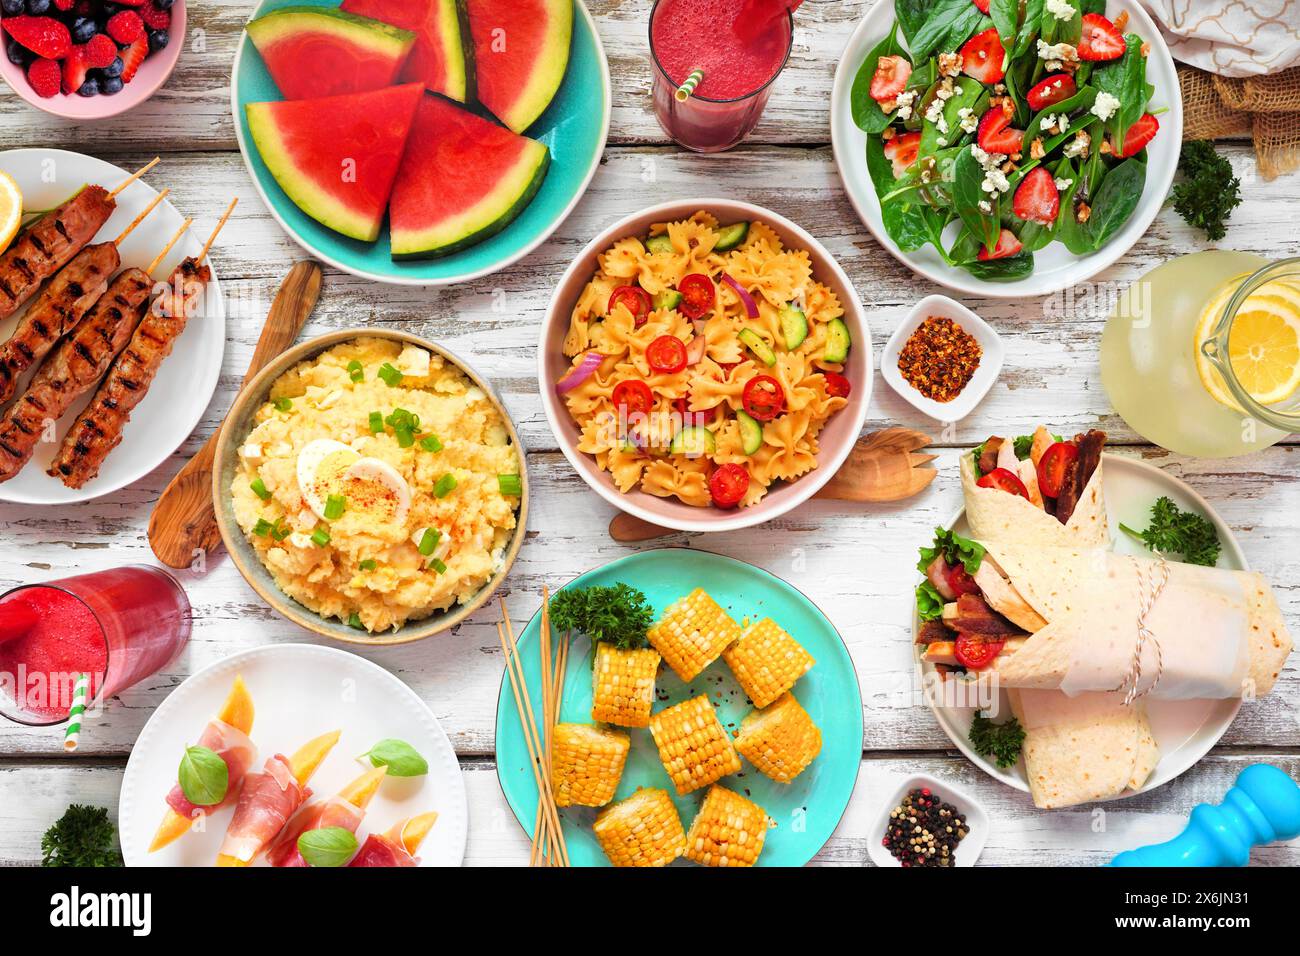 Sommer-Esstisch-Szene auf weißem Holz Hintergrund. Verschiedene erfrischende Salate, Obst, Wraps und Grillspieße. Draufsicht. Stockfoto